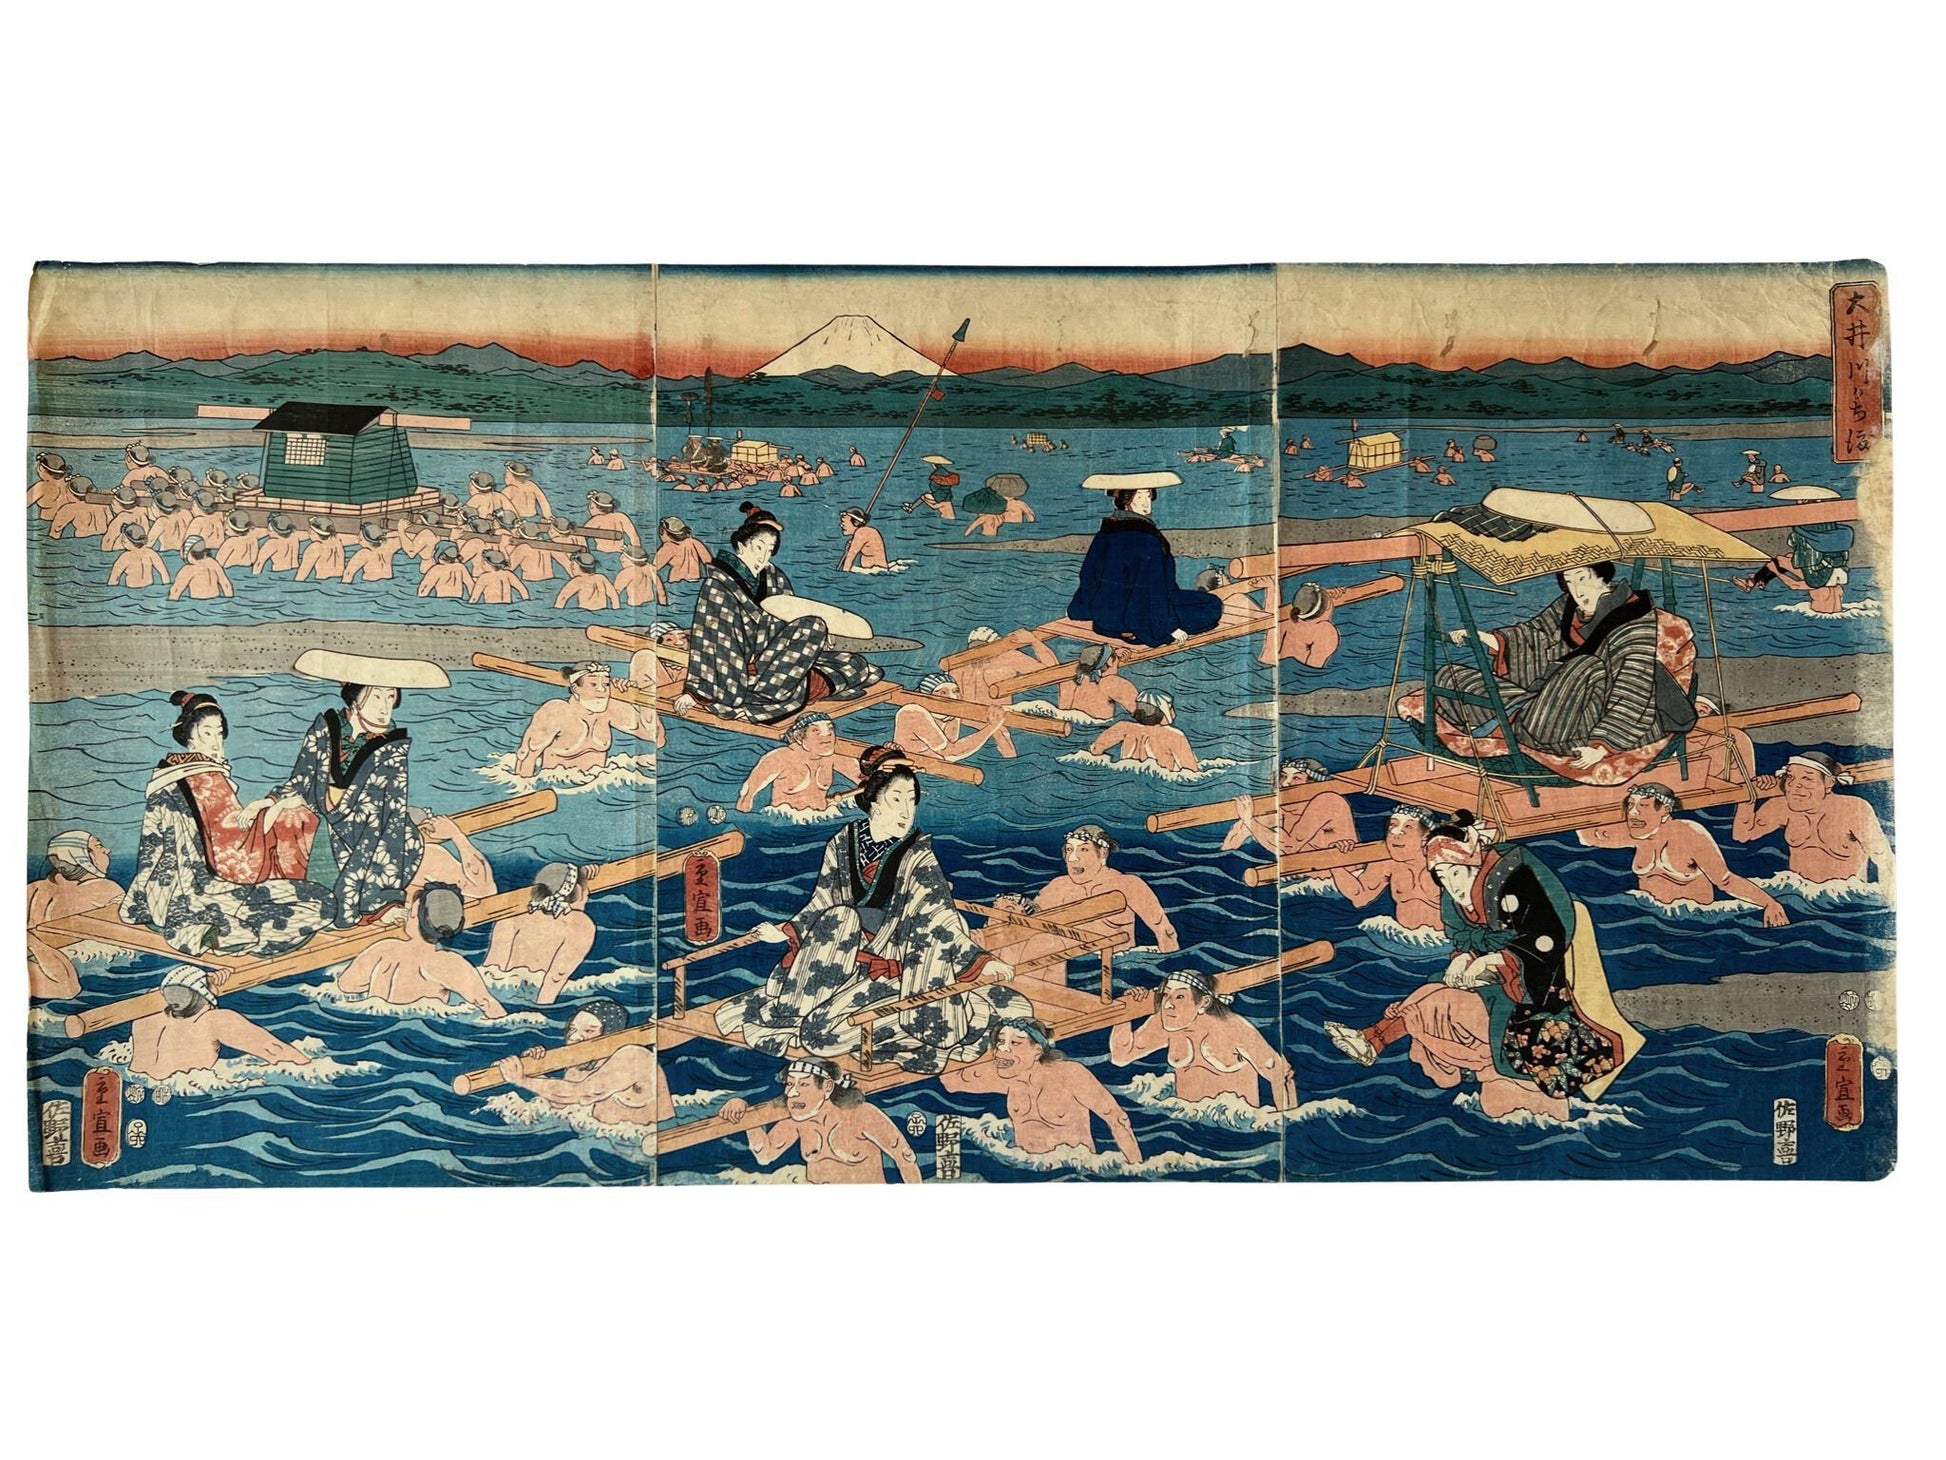 estampe japonaise traversée de rivière par femmes en kimono et leurs porteurs 